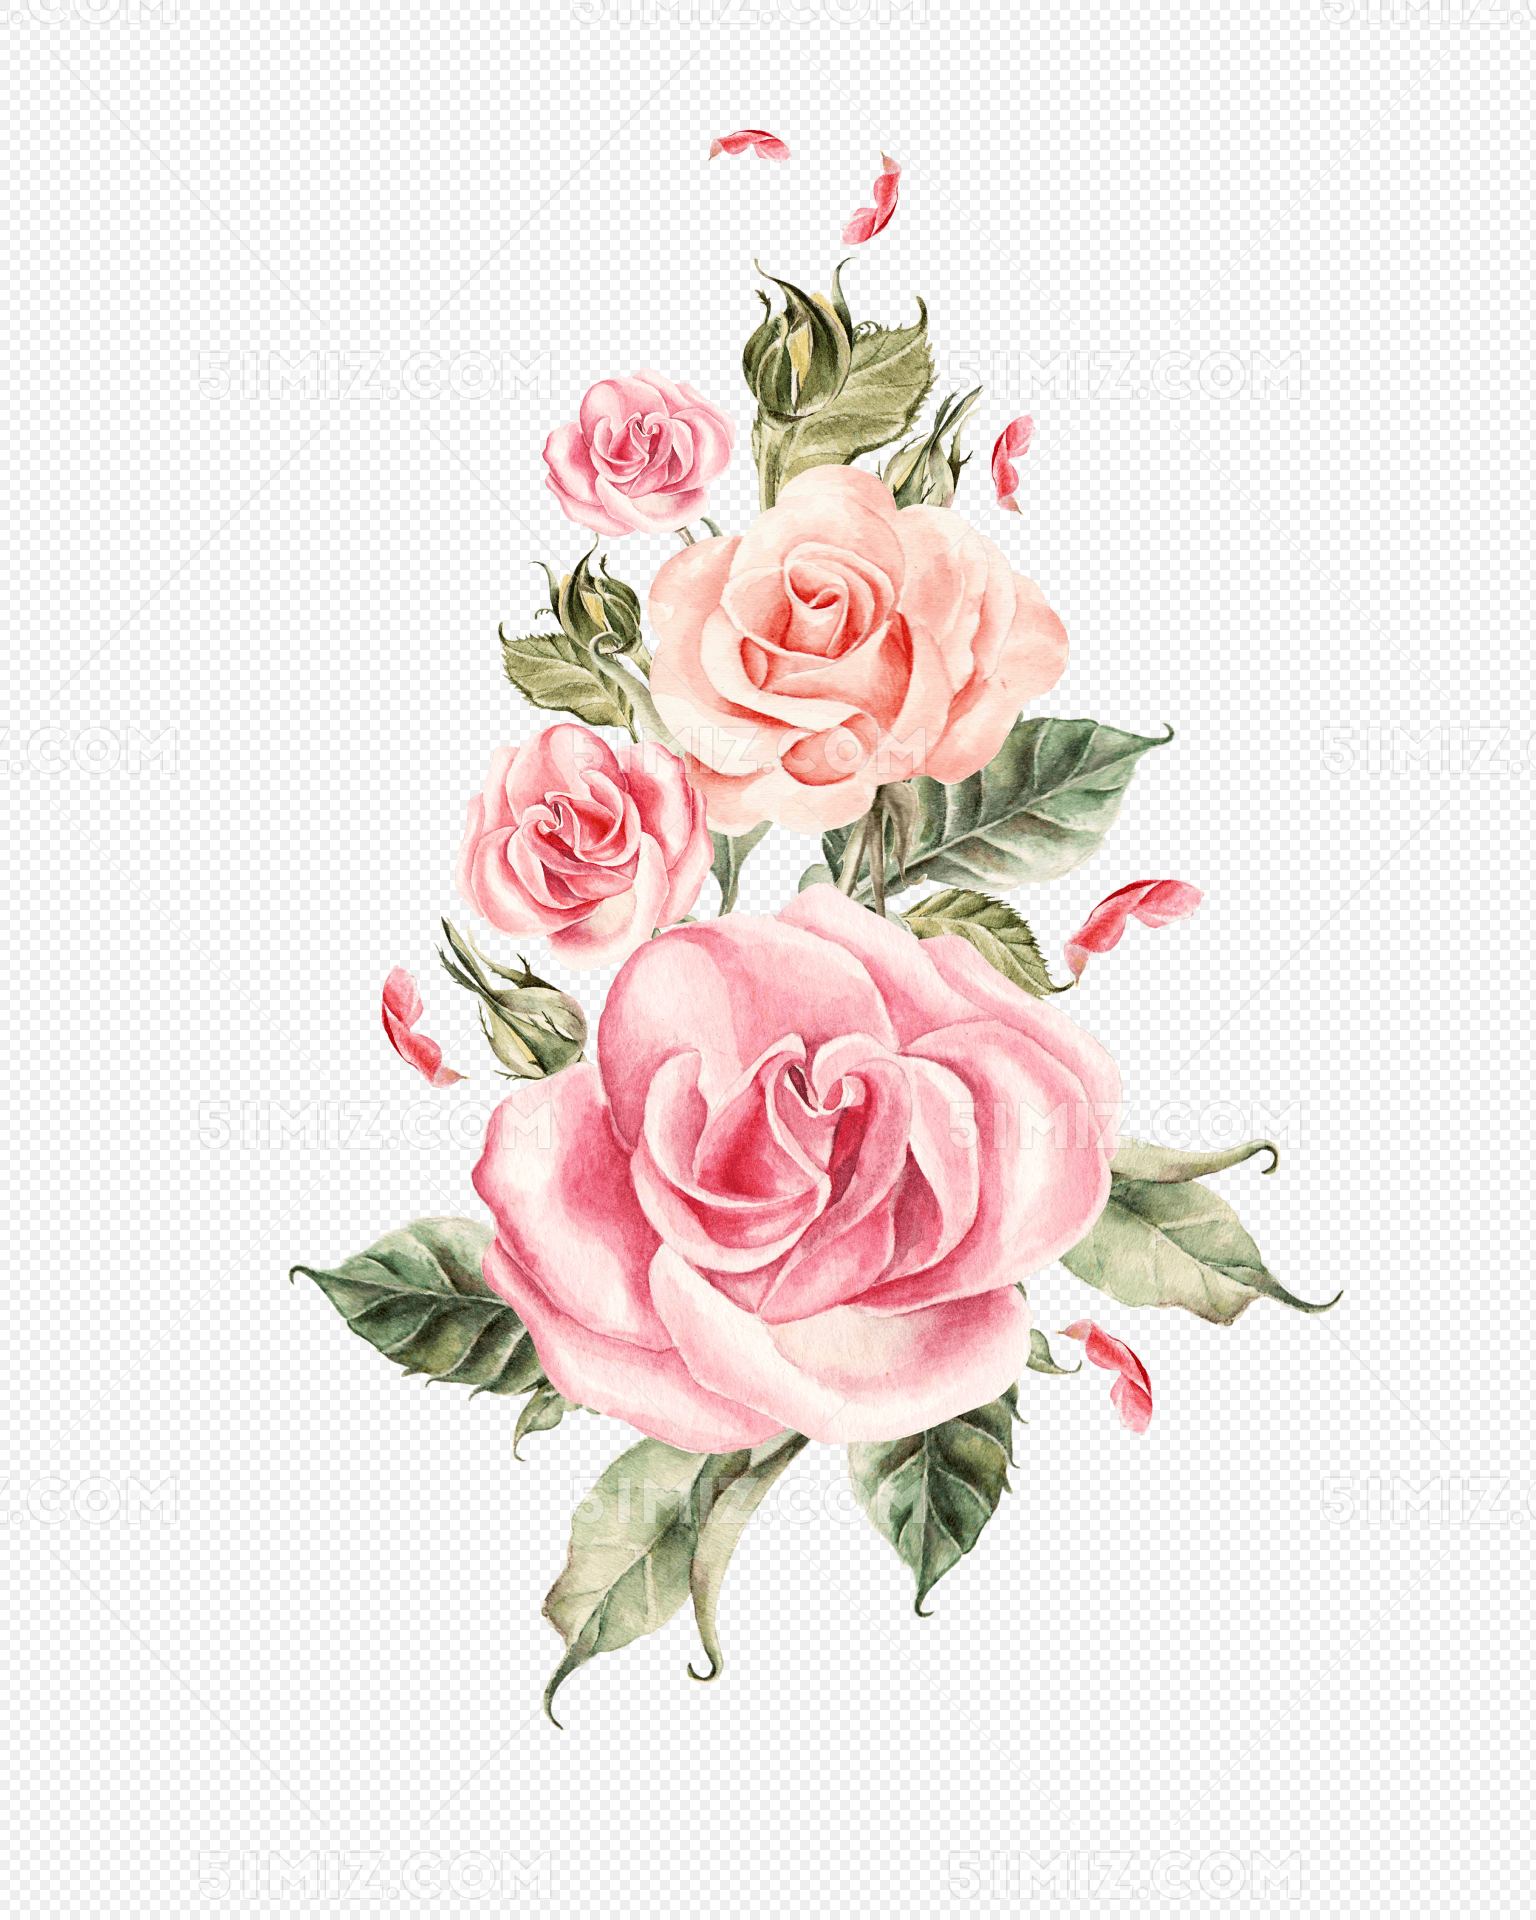 手绘粉色玫瑰花束